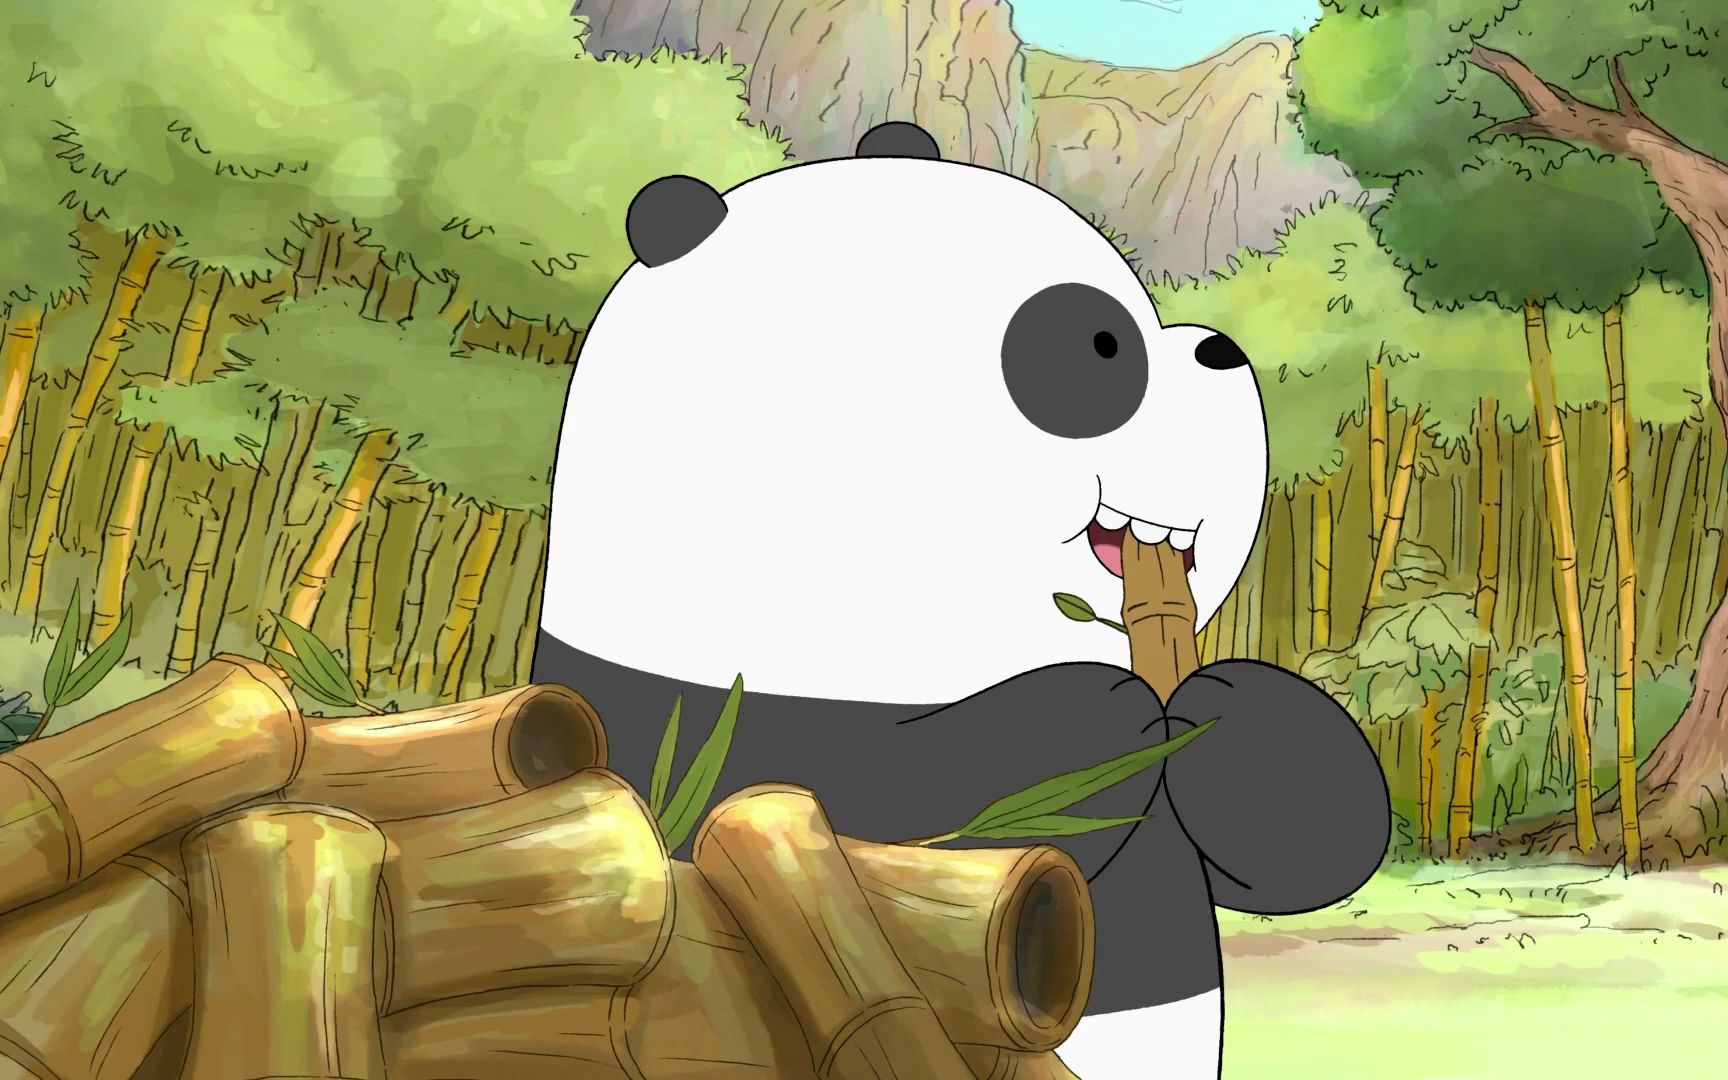 【咱们裸熊】胖达小时候在中国当国宝的日子,就是孤单了一点